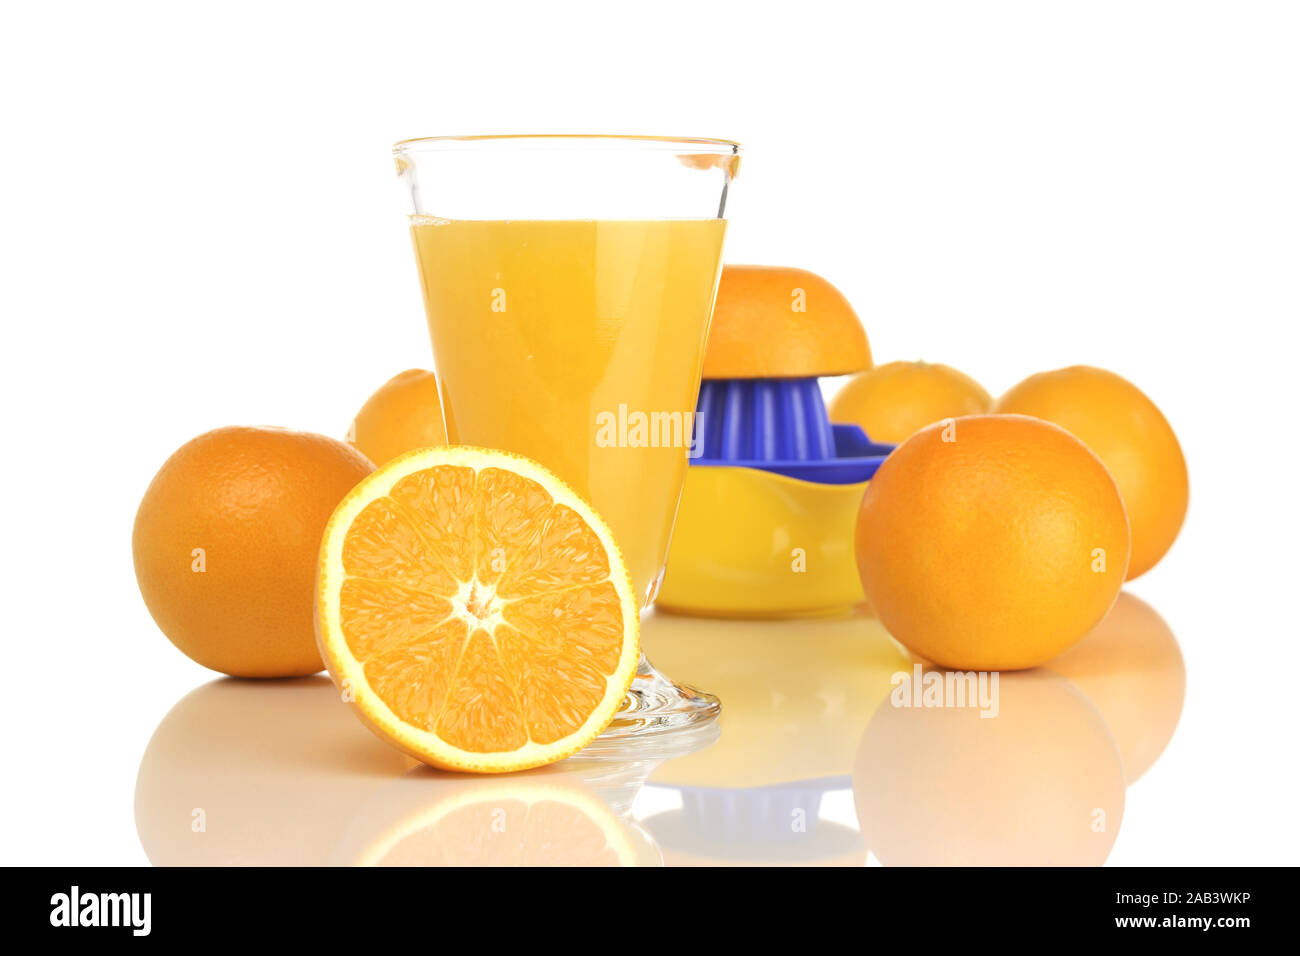 Glas mit Orangensaft, Orangen und Entsafter |Vetro con succo di arancia, succo di arance e spremiagrumi| Foto Stock